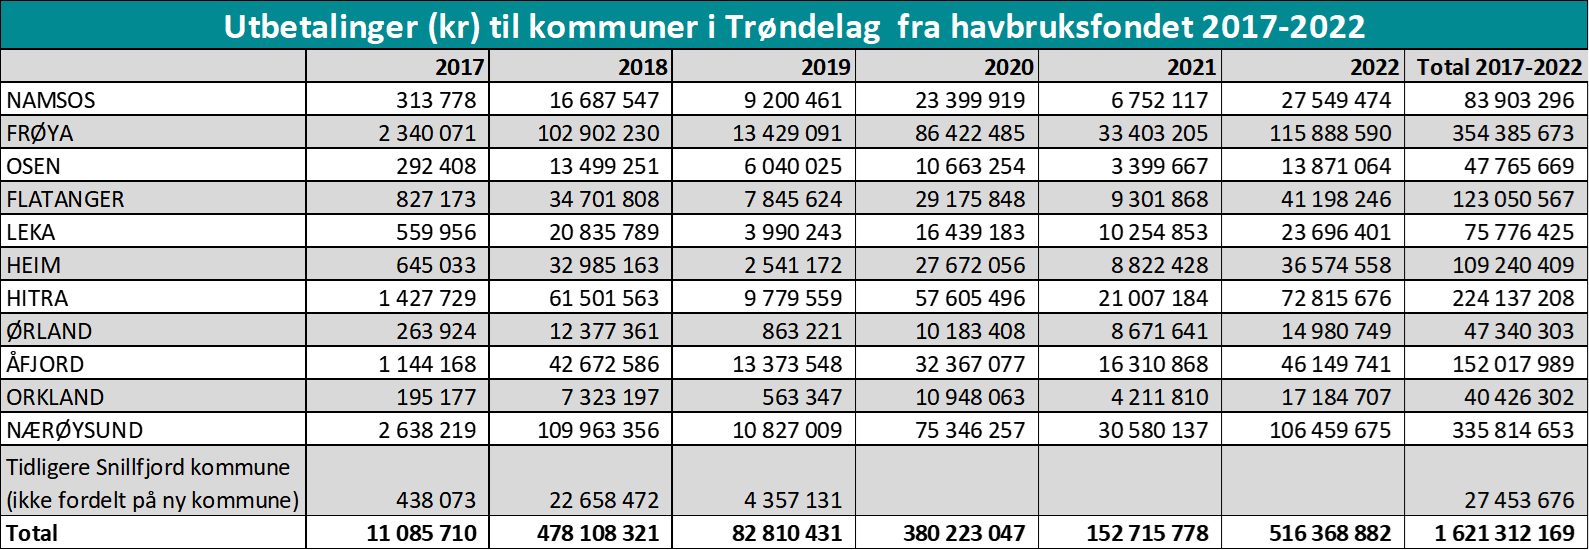 Utbetalinger (kr) til kommuner i Trøndelag fra havbruksfondet 2017-2022